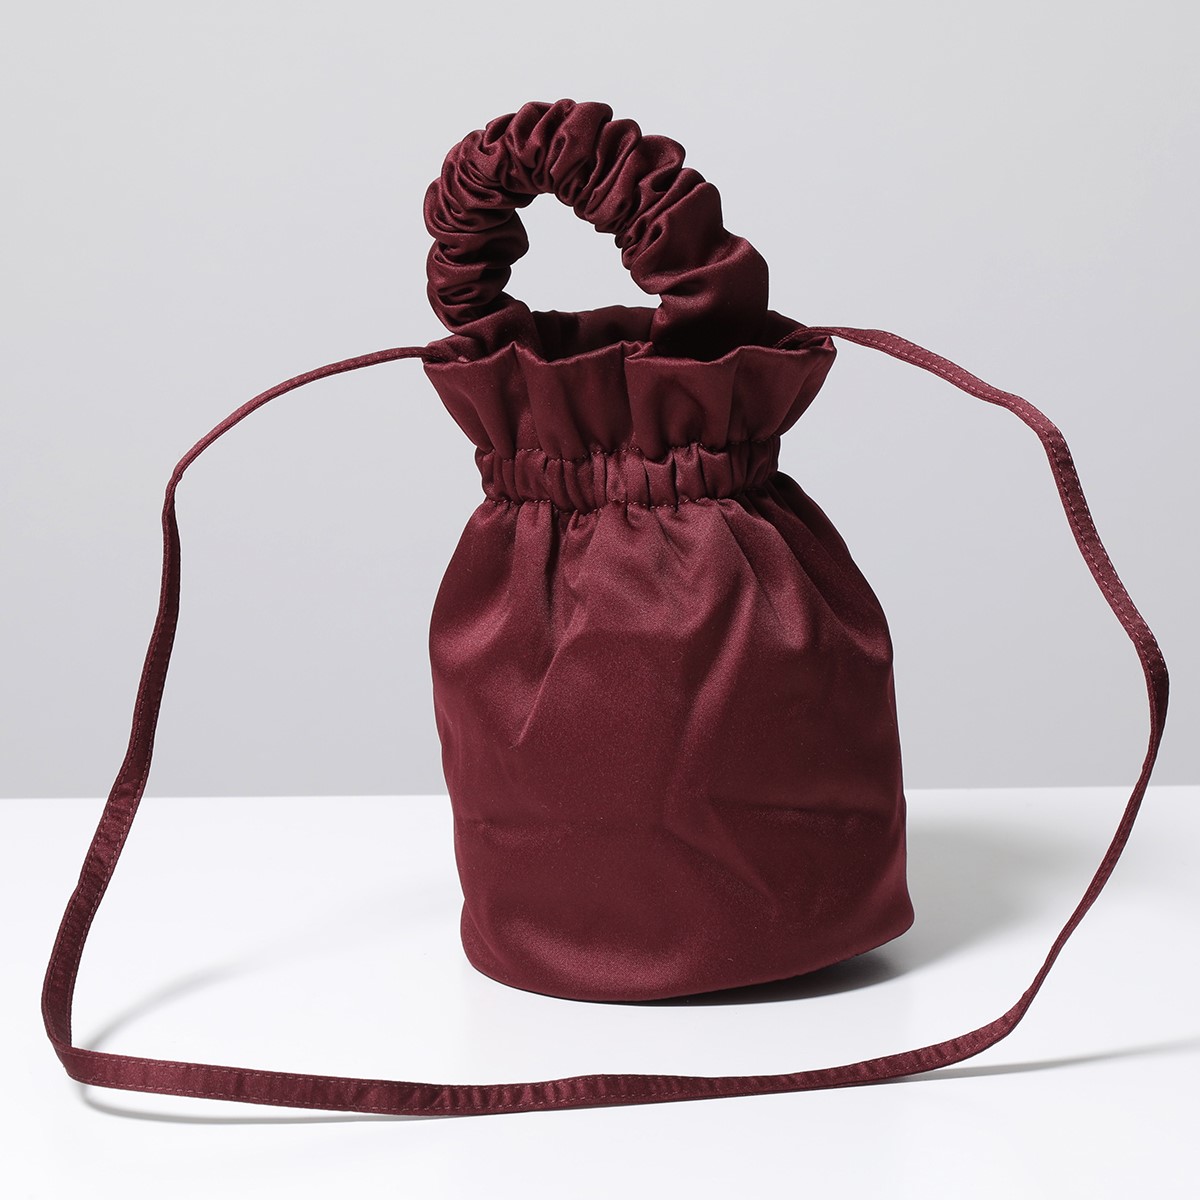 GANNI ガニー 巾着バッグ A4503 5855 レディース ハンドバッグ ショルダーバッグ ロゴ刺繍 サテン 鞄 カラー2色 |  インポートセレクト musee